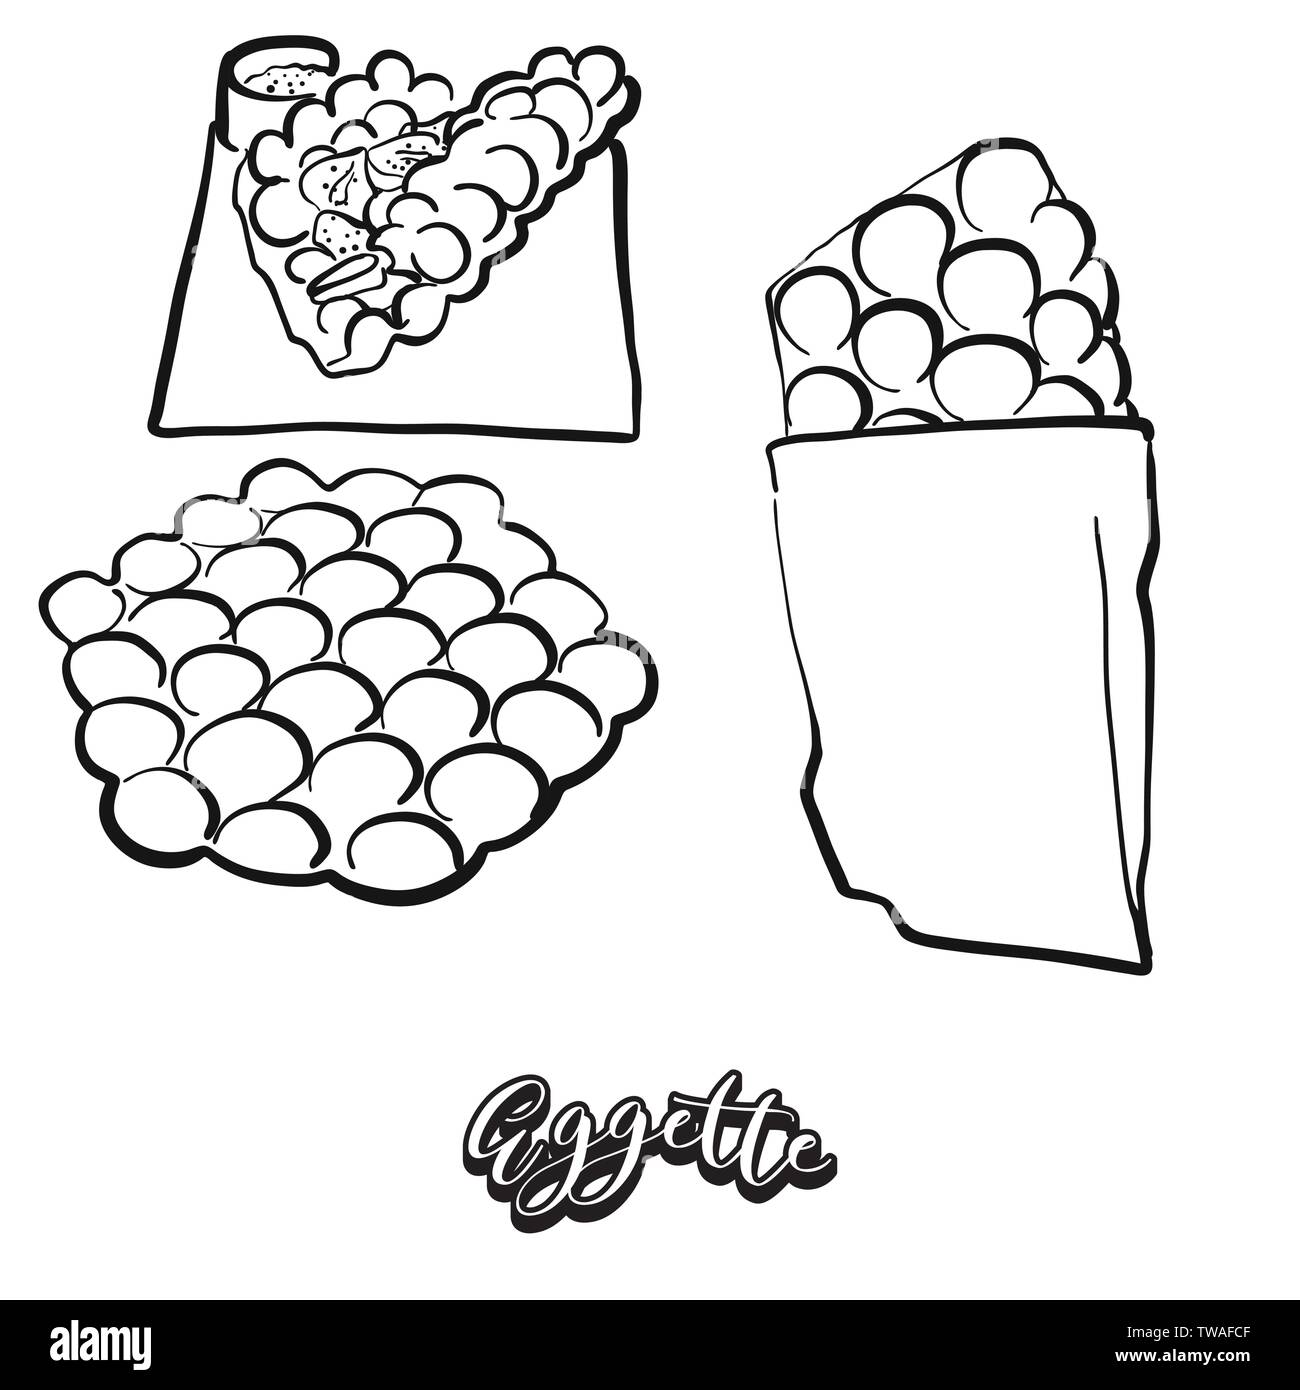 Cibo Eggette schizzo su lavagna. Vettore di disegno di pancake, solitamente del tipo noto di Hong Kong. Illustrazione alimentare serie. Illustrazione Vettoriale